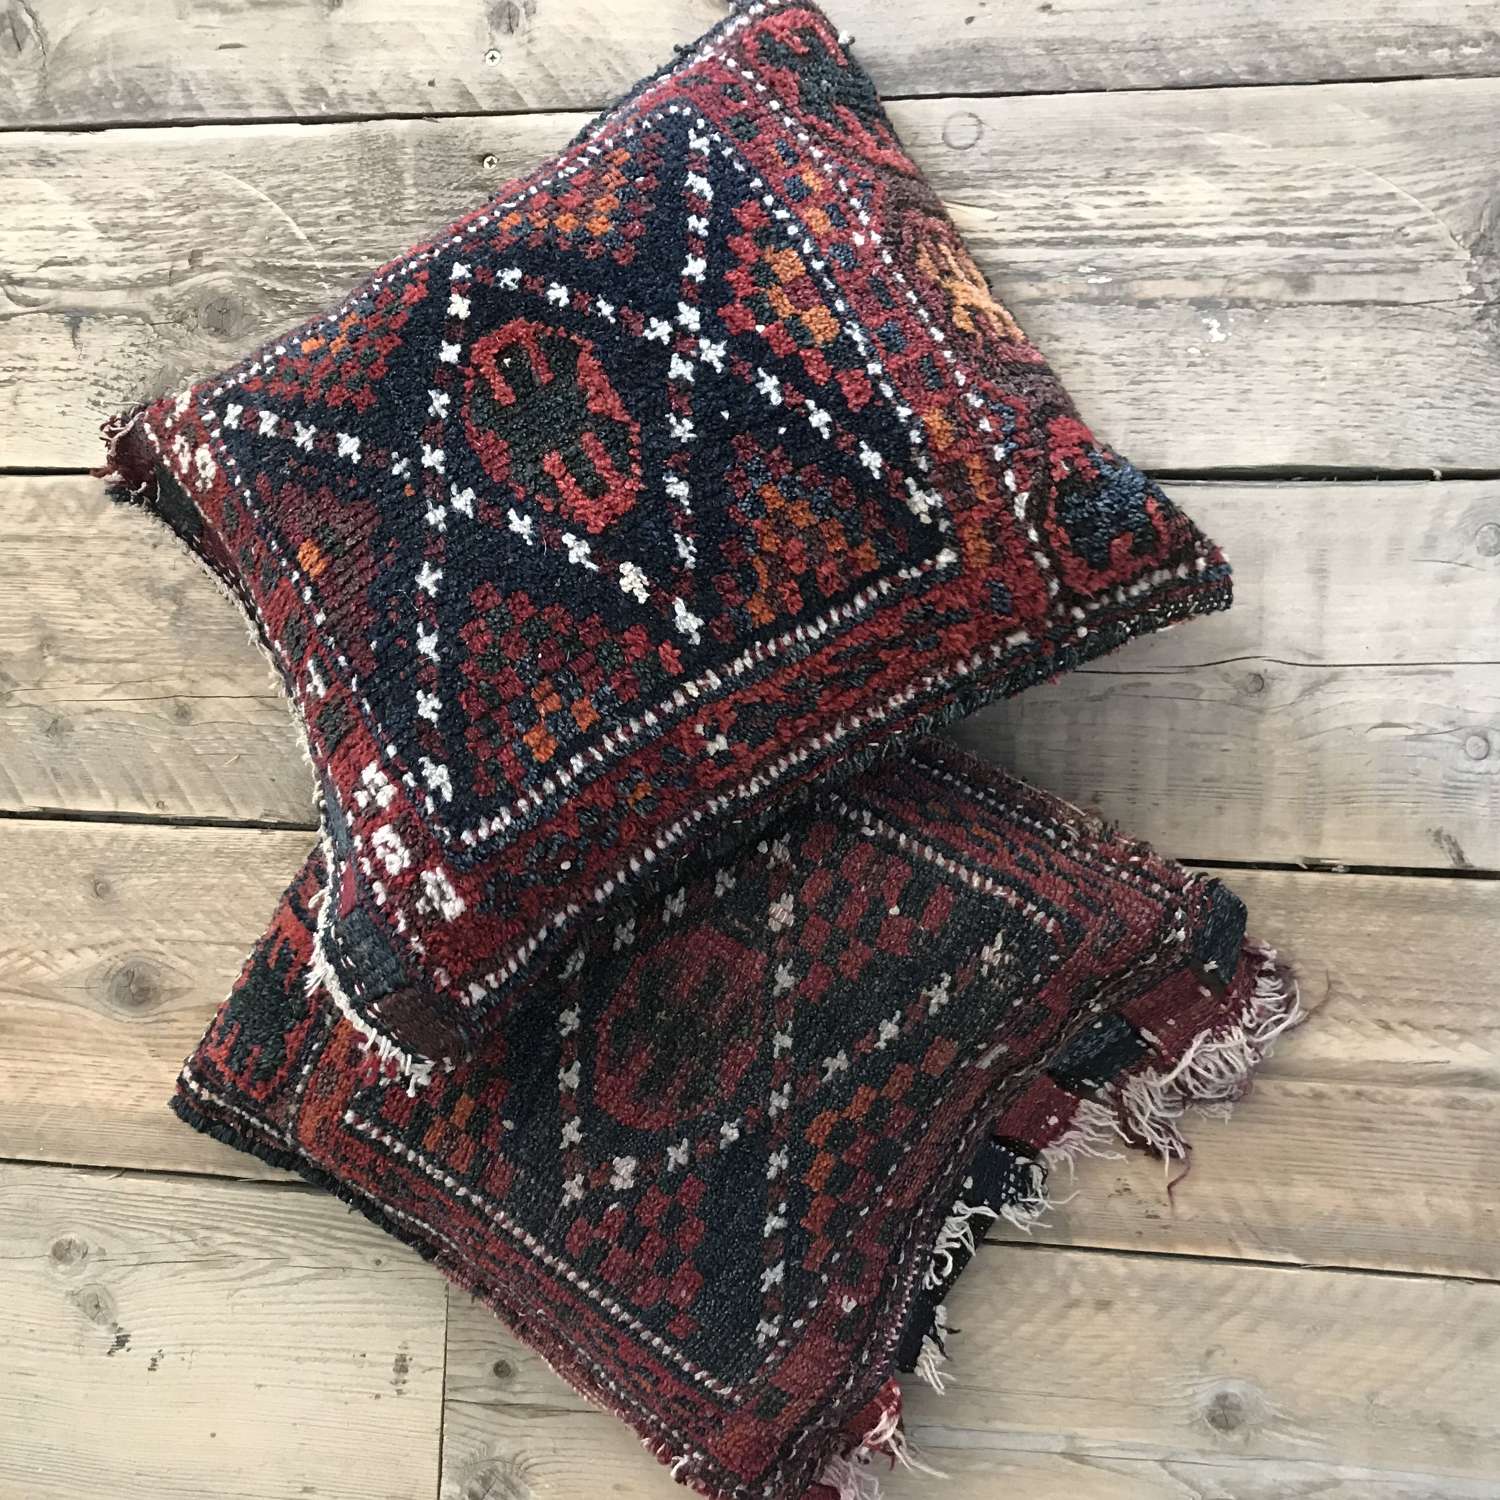 Tribal Rug saddle bag cushion covers